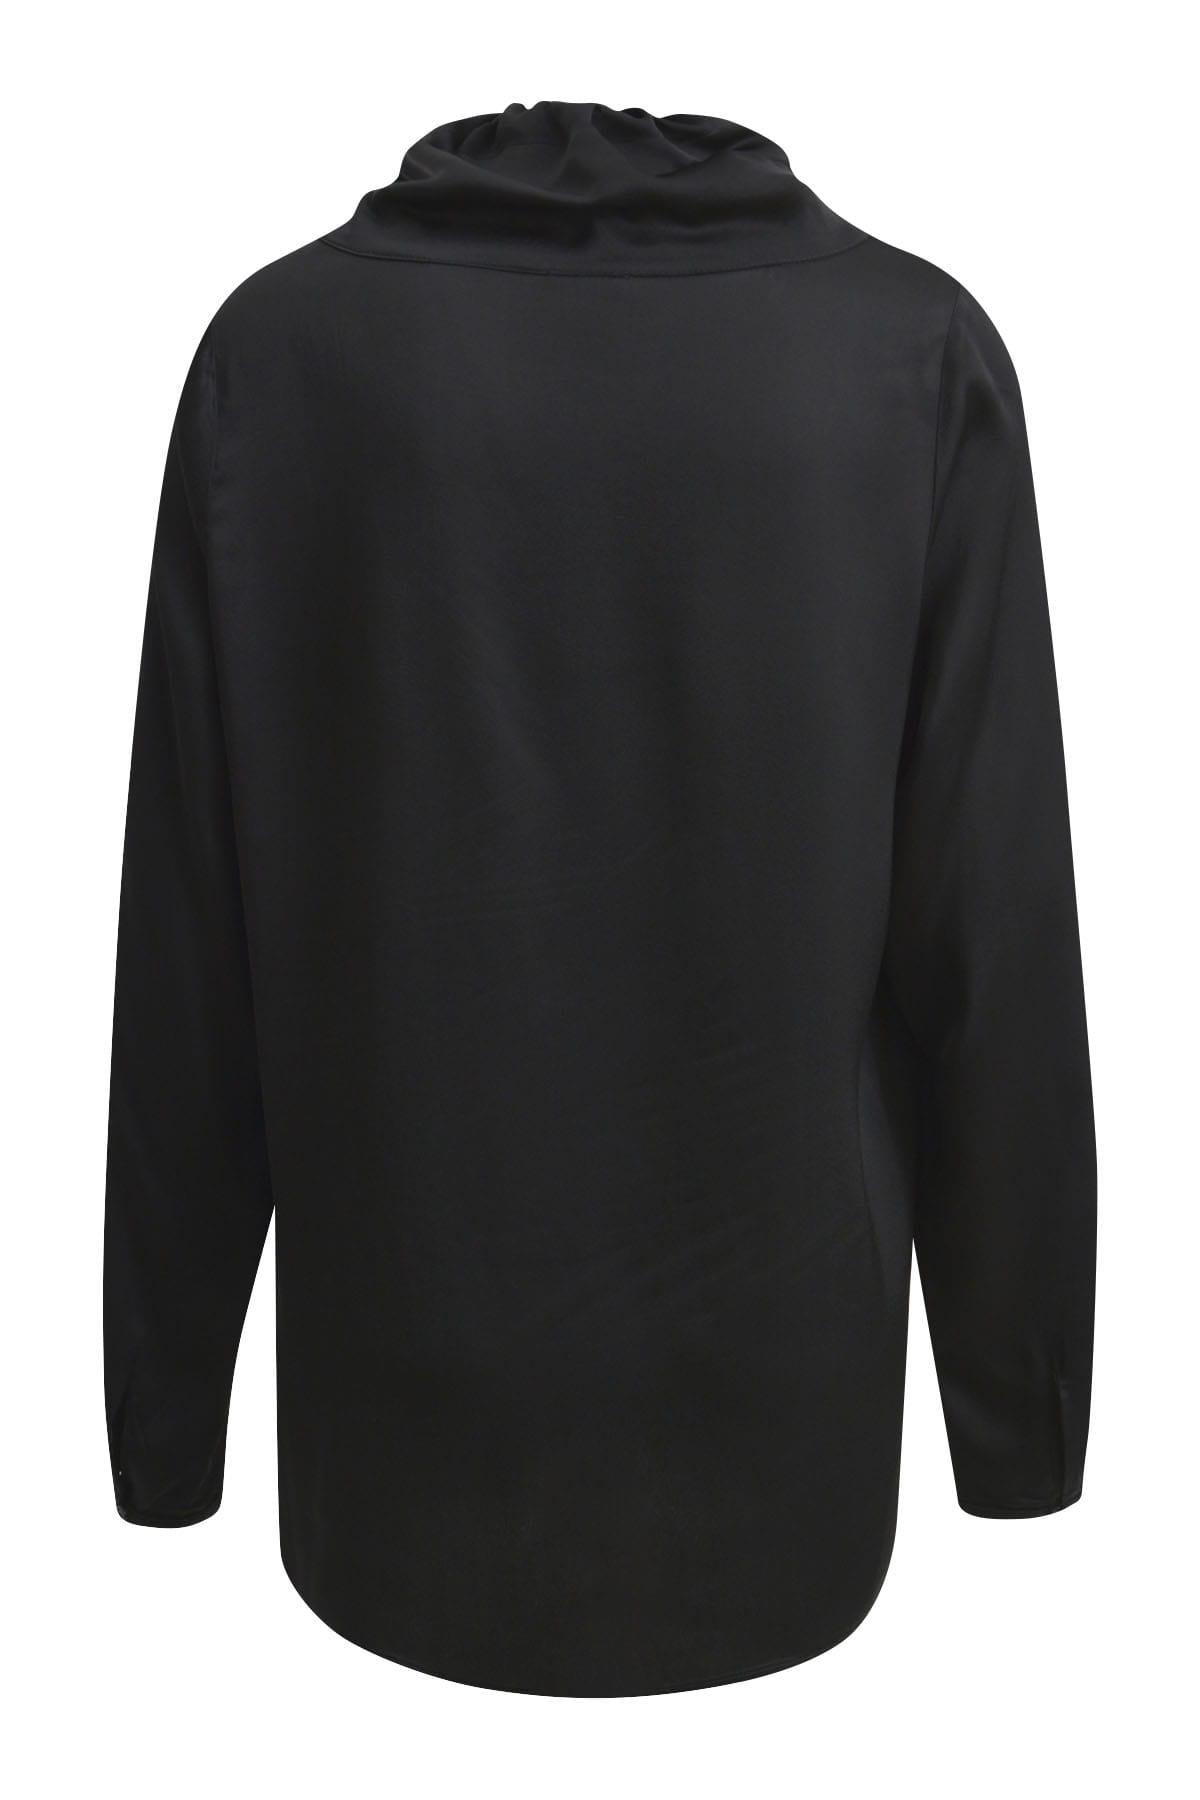 Schwarze Bluse mit hohem Kragen und Kordelzug black Blusen Milano 